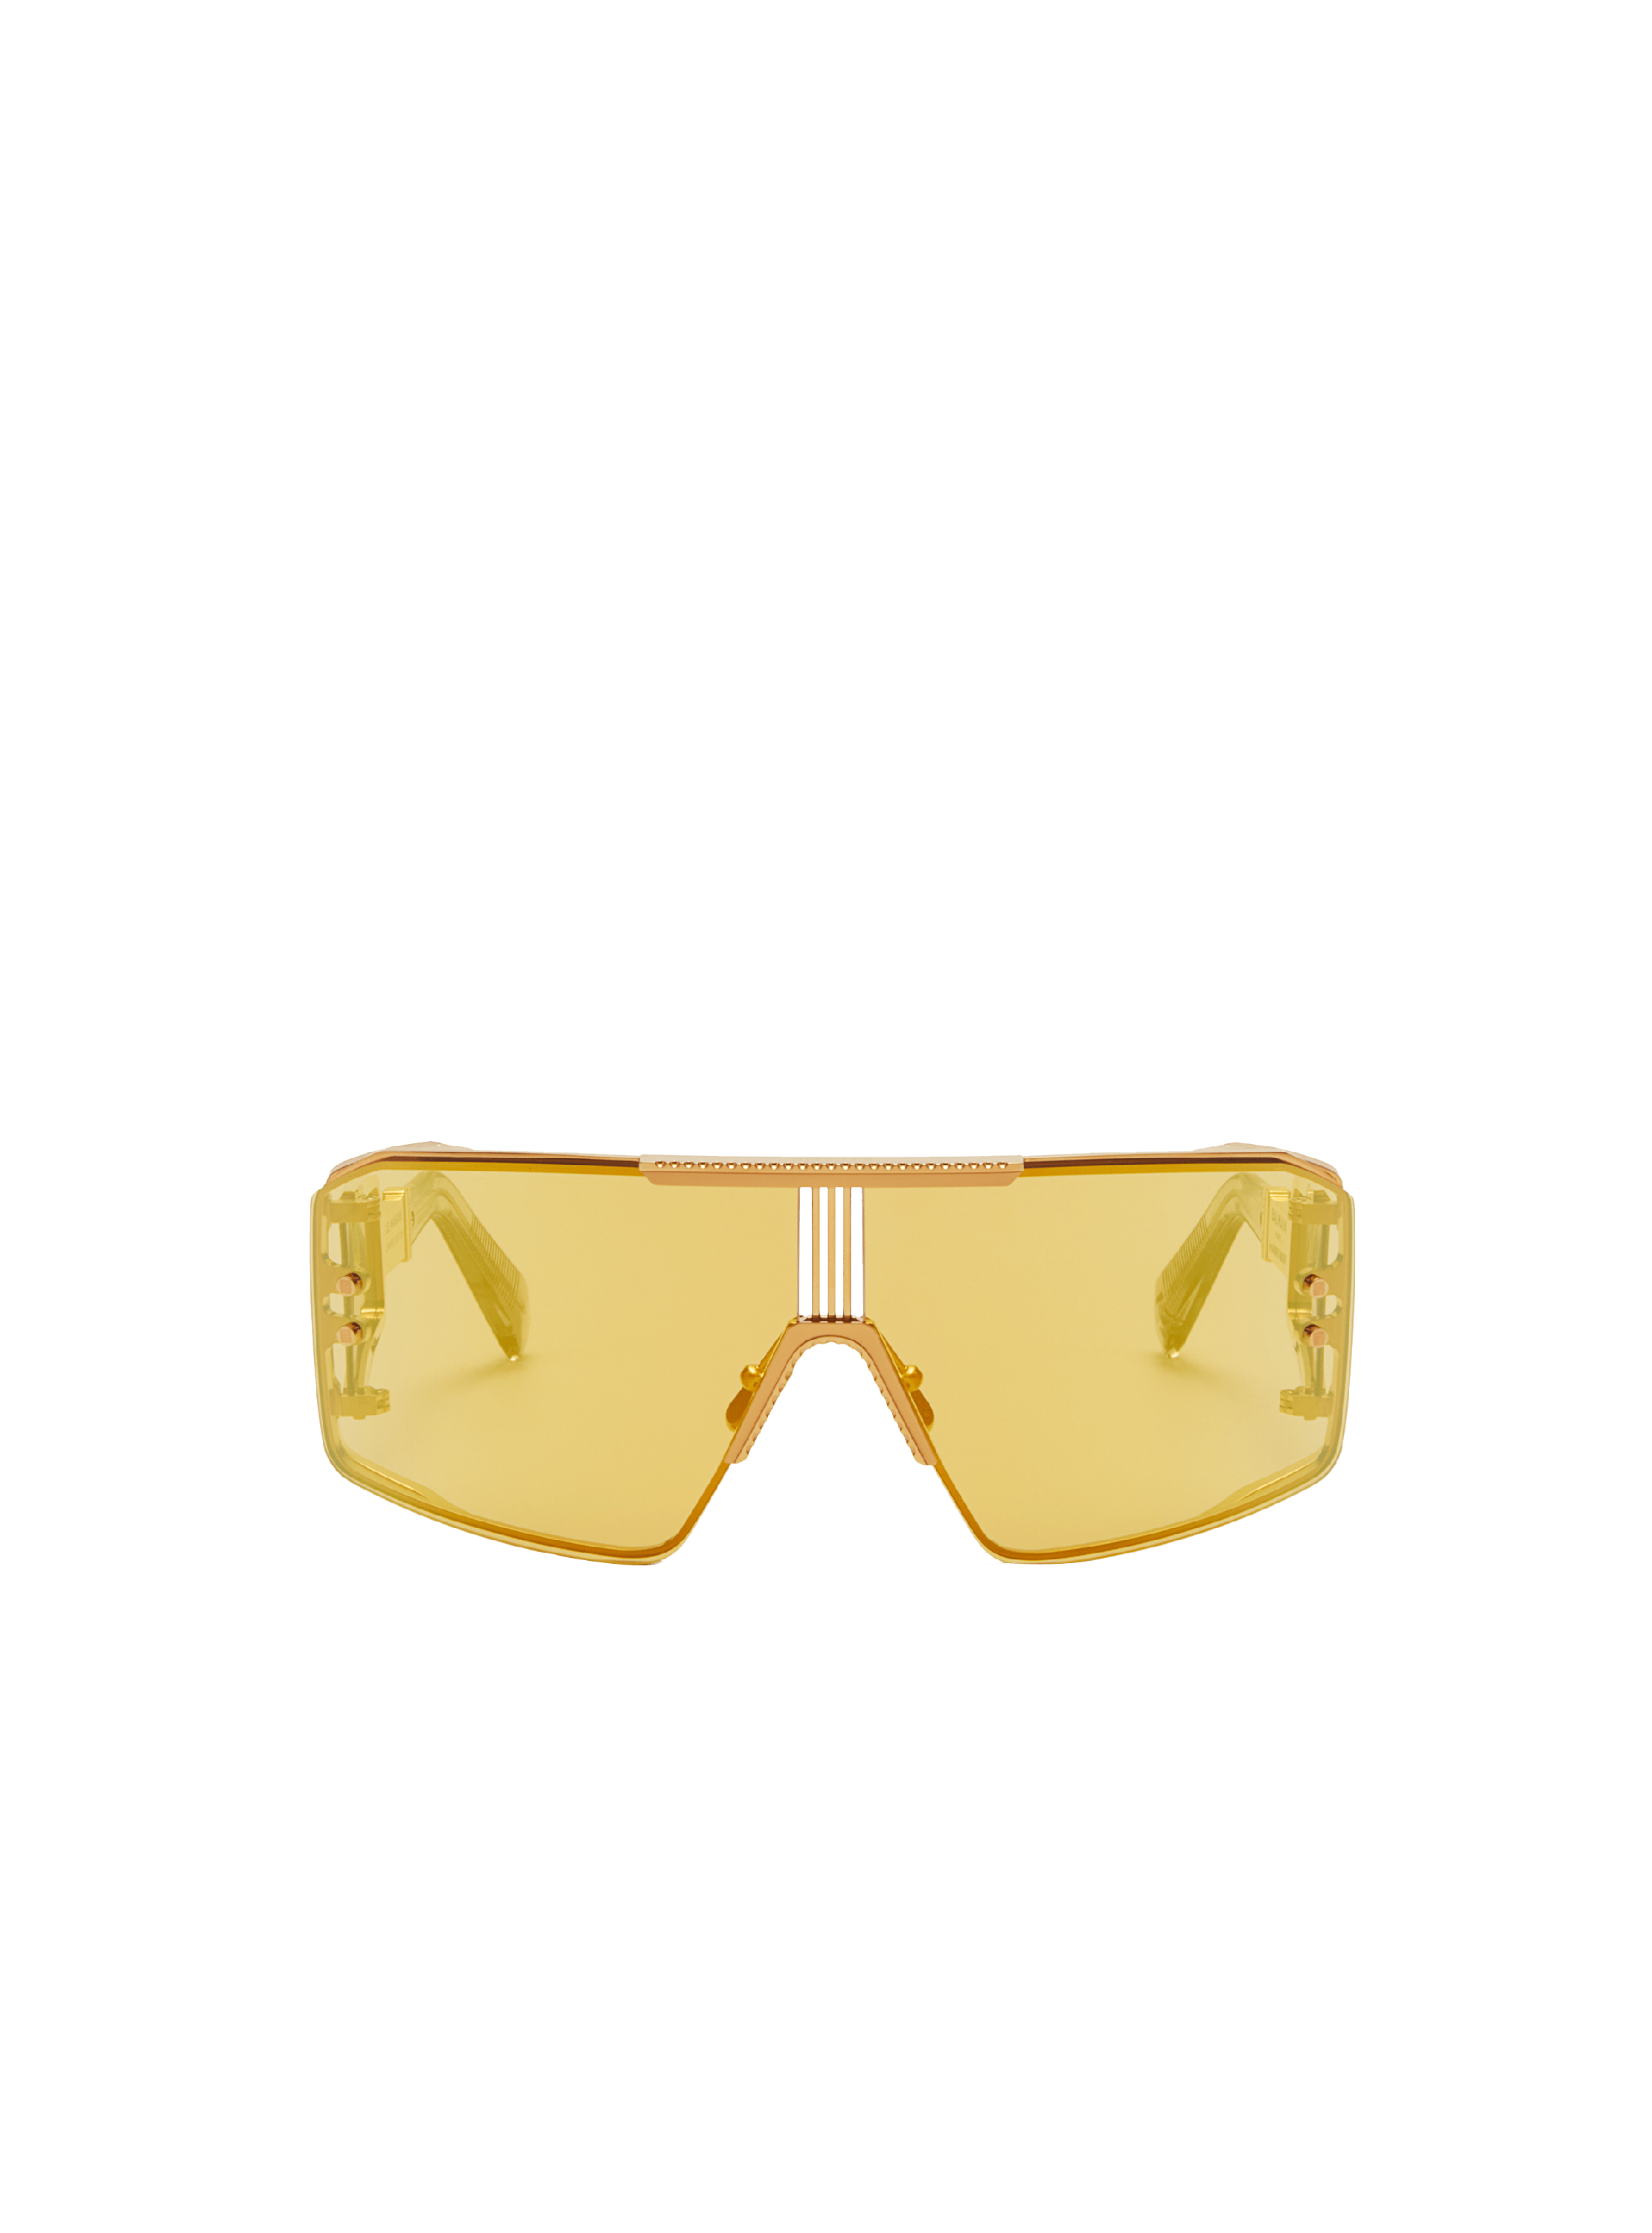 Le Masque Sunglasses